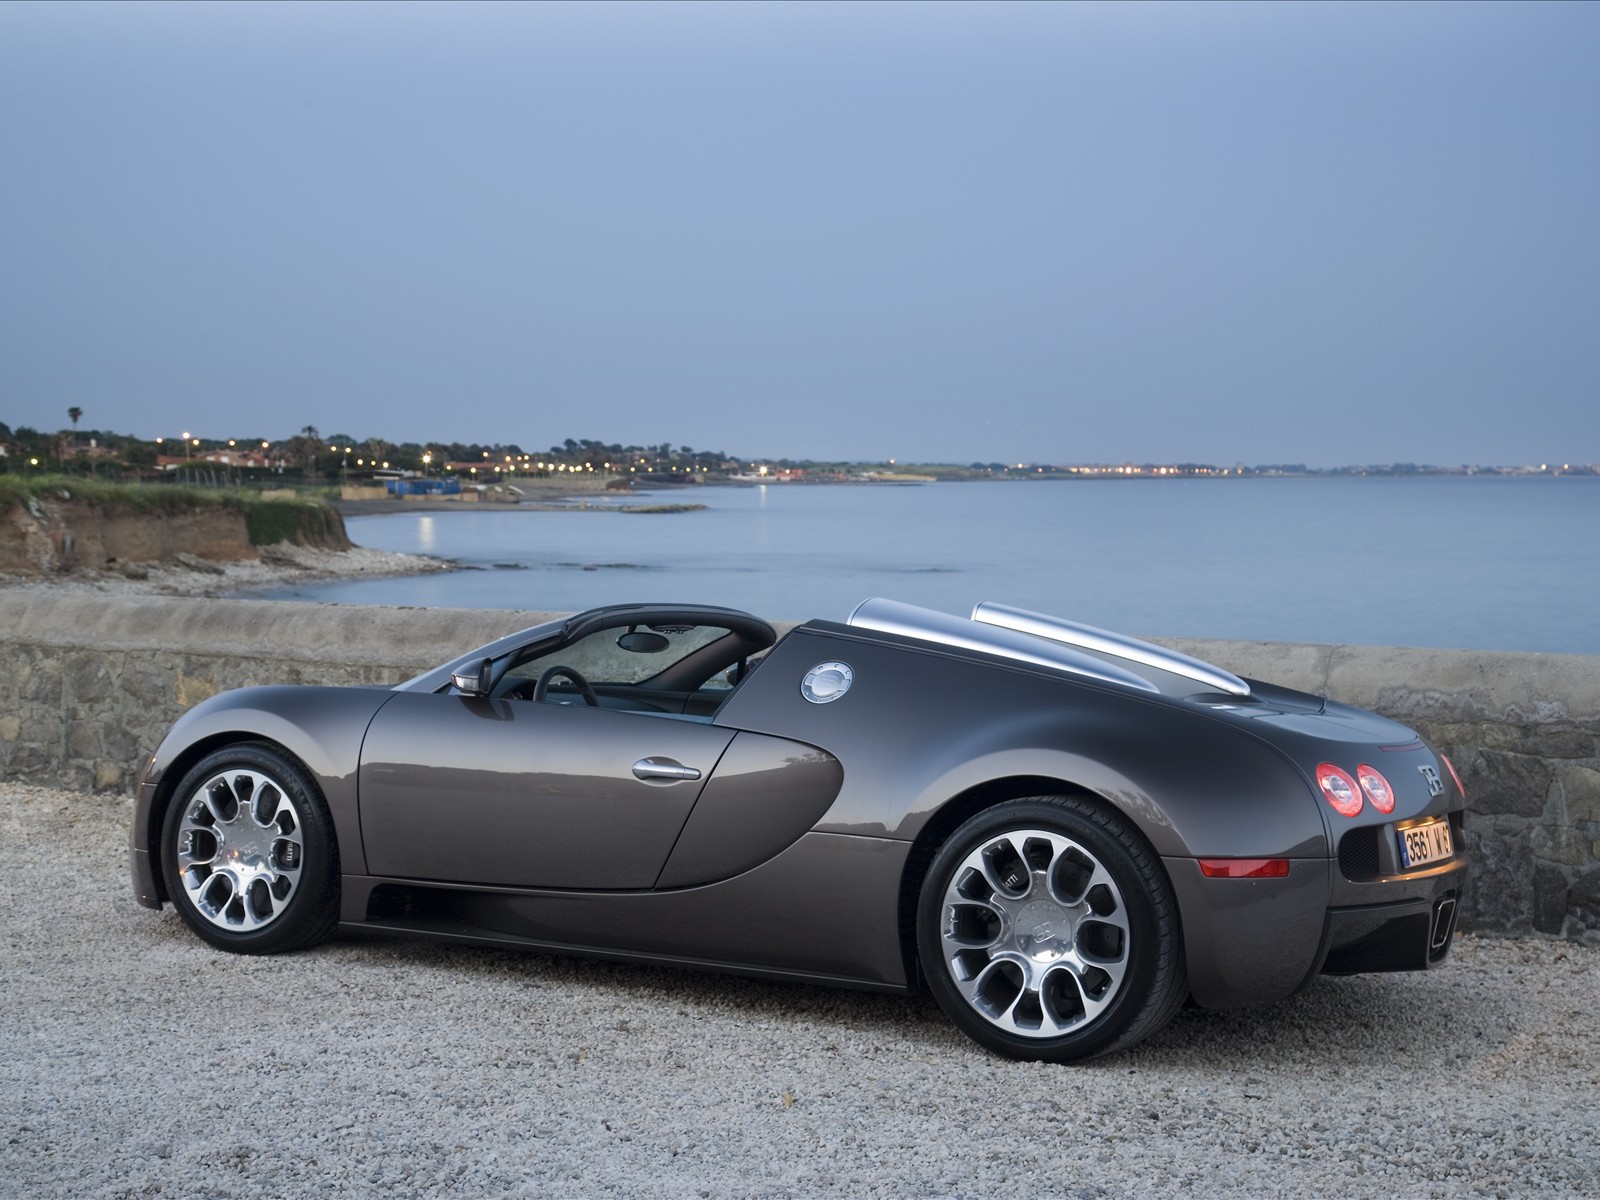 Laden Sie Bugatti HD-Desktop-Hintergründe herunter